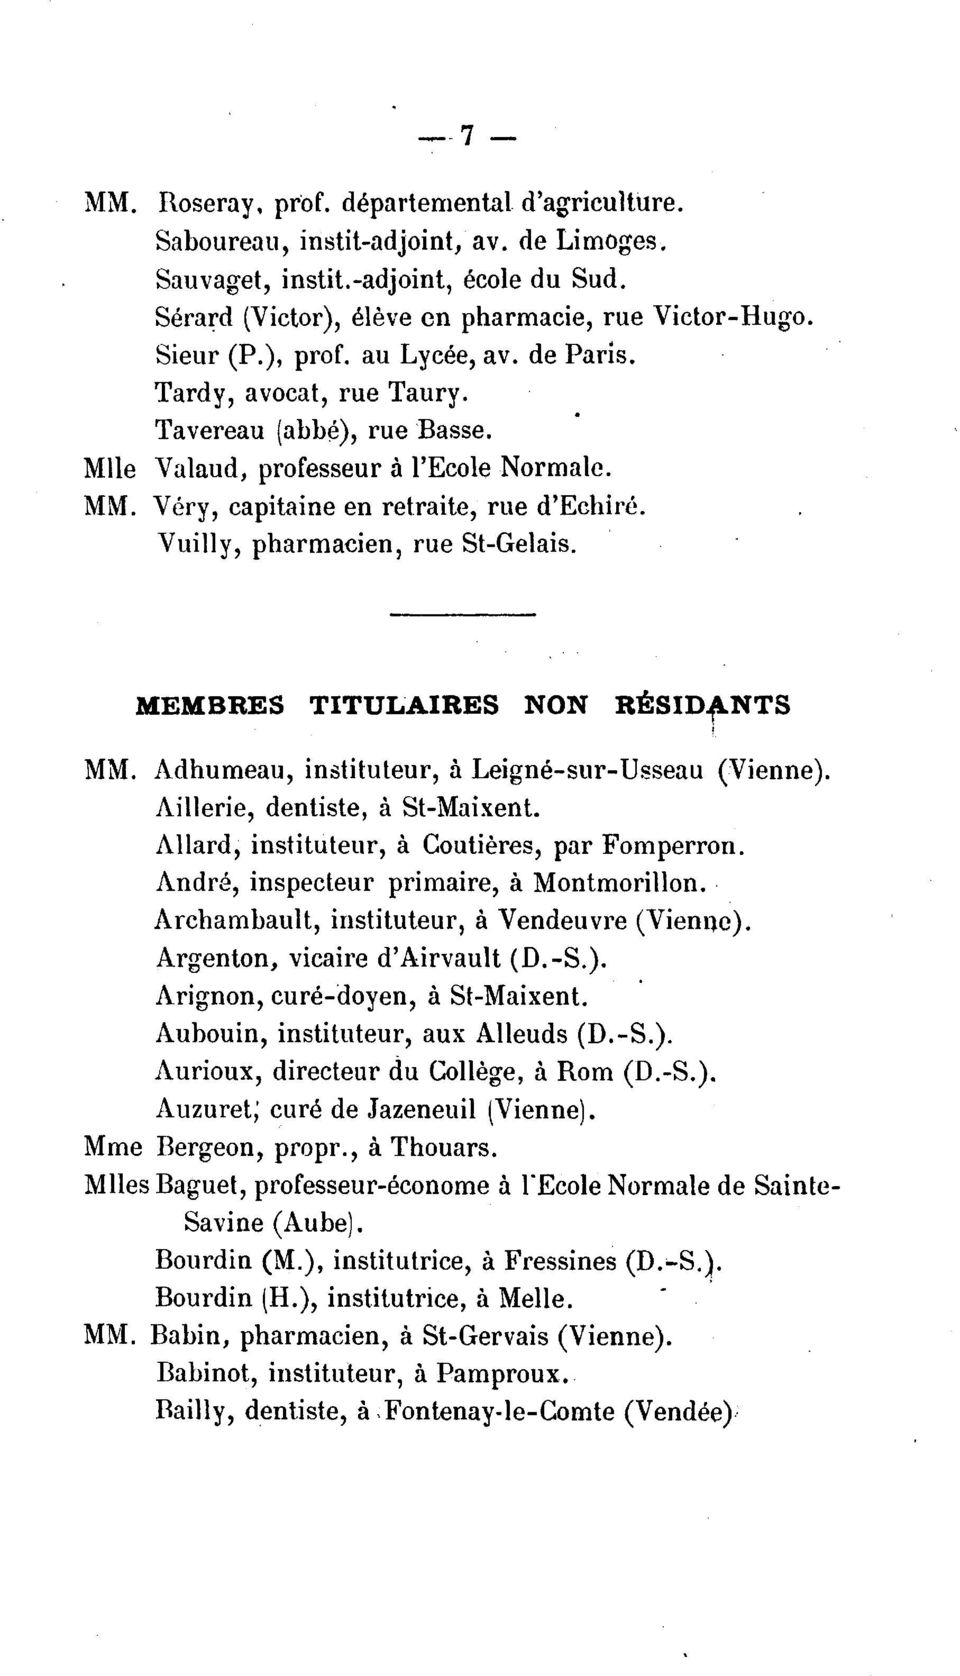 Vuilly, pharmacien, rue St-Gelais. MEMBRES TITUL.AIRES NON RESIDfNTS MM. Adhumeau, instituteur, a Leigne-sur-Usseau (Vienne). Aillerie, dentiste, a St-Maixent.